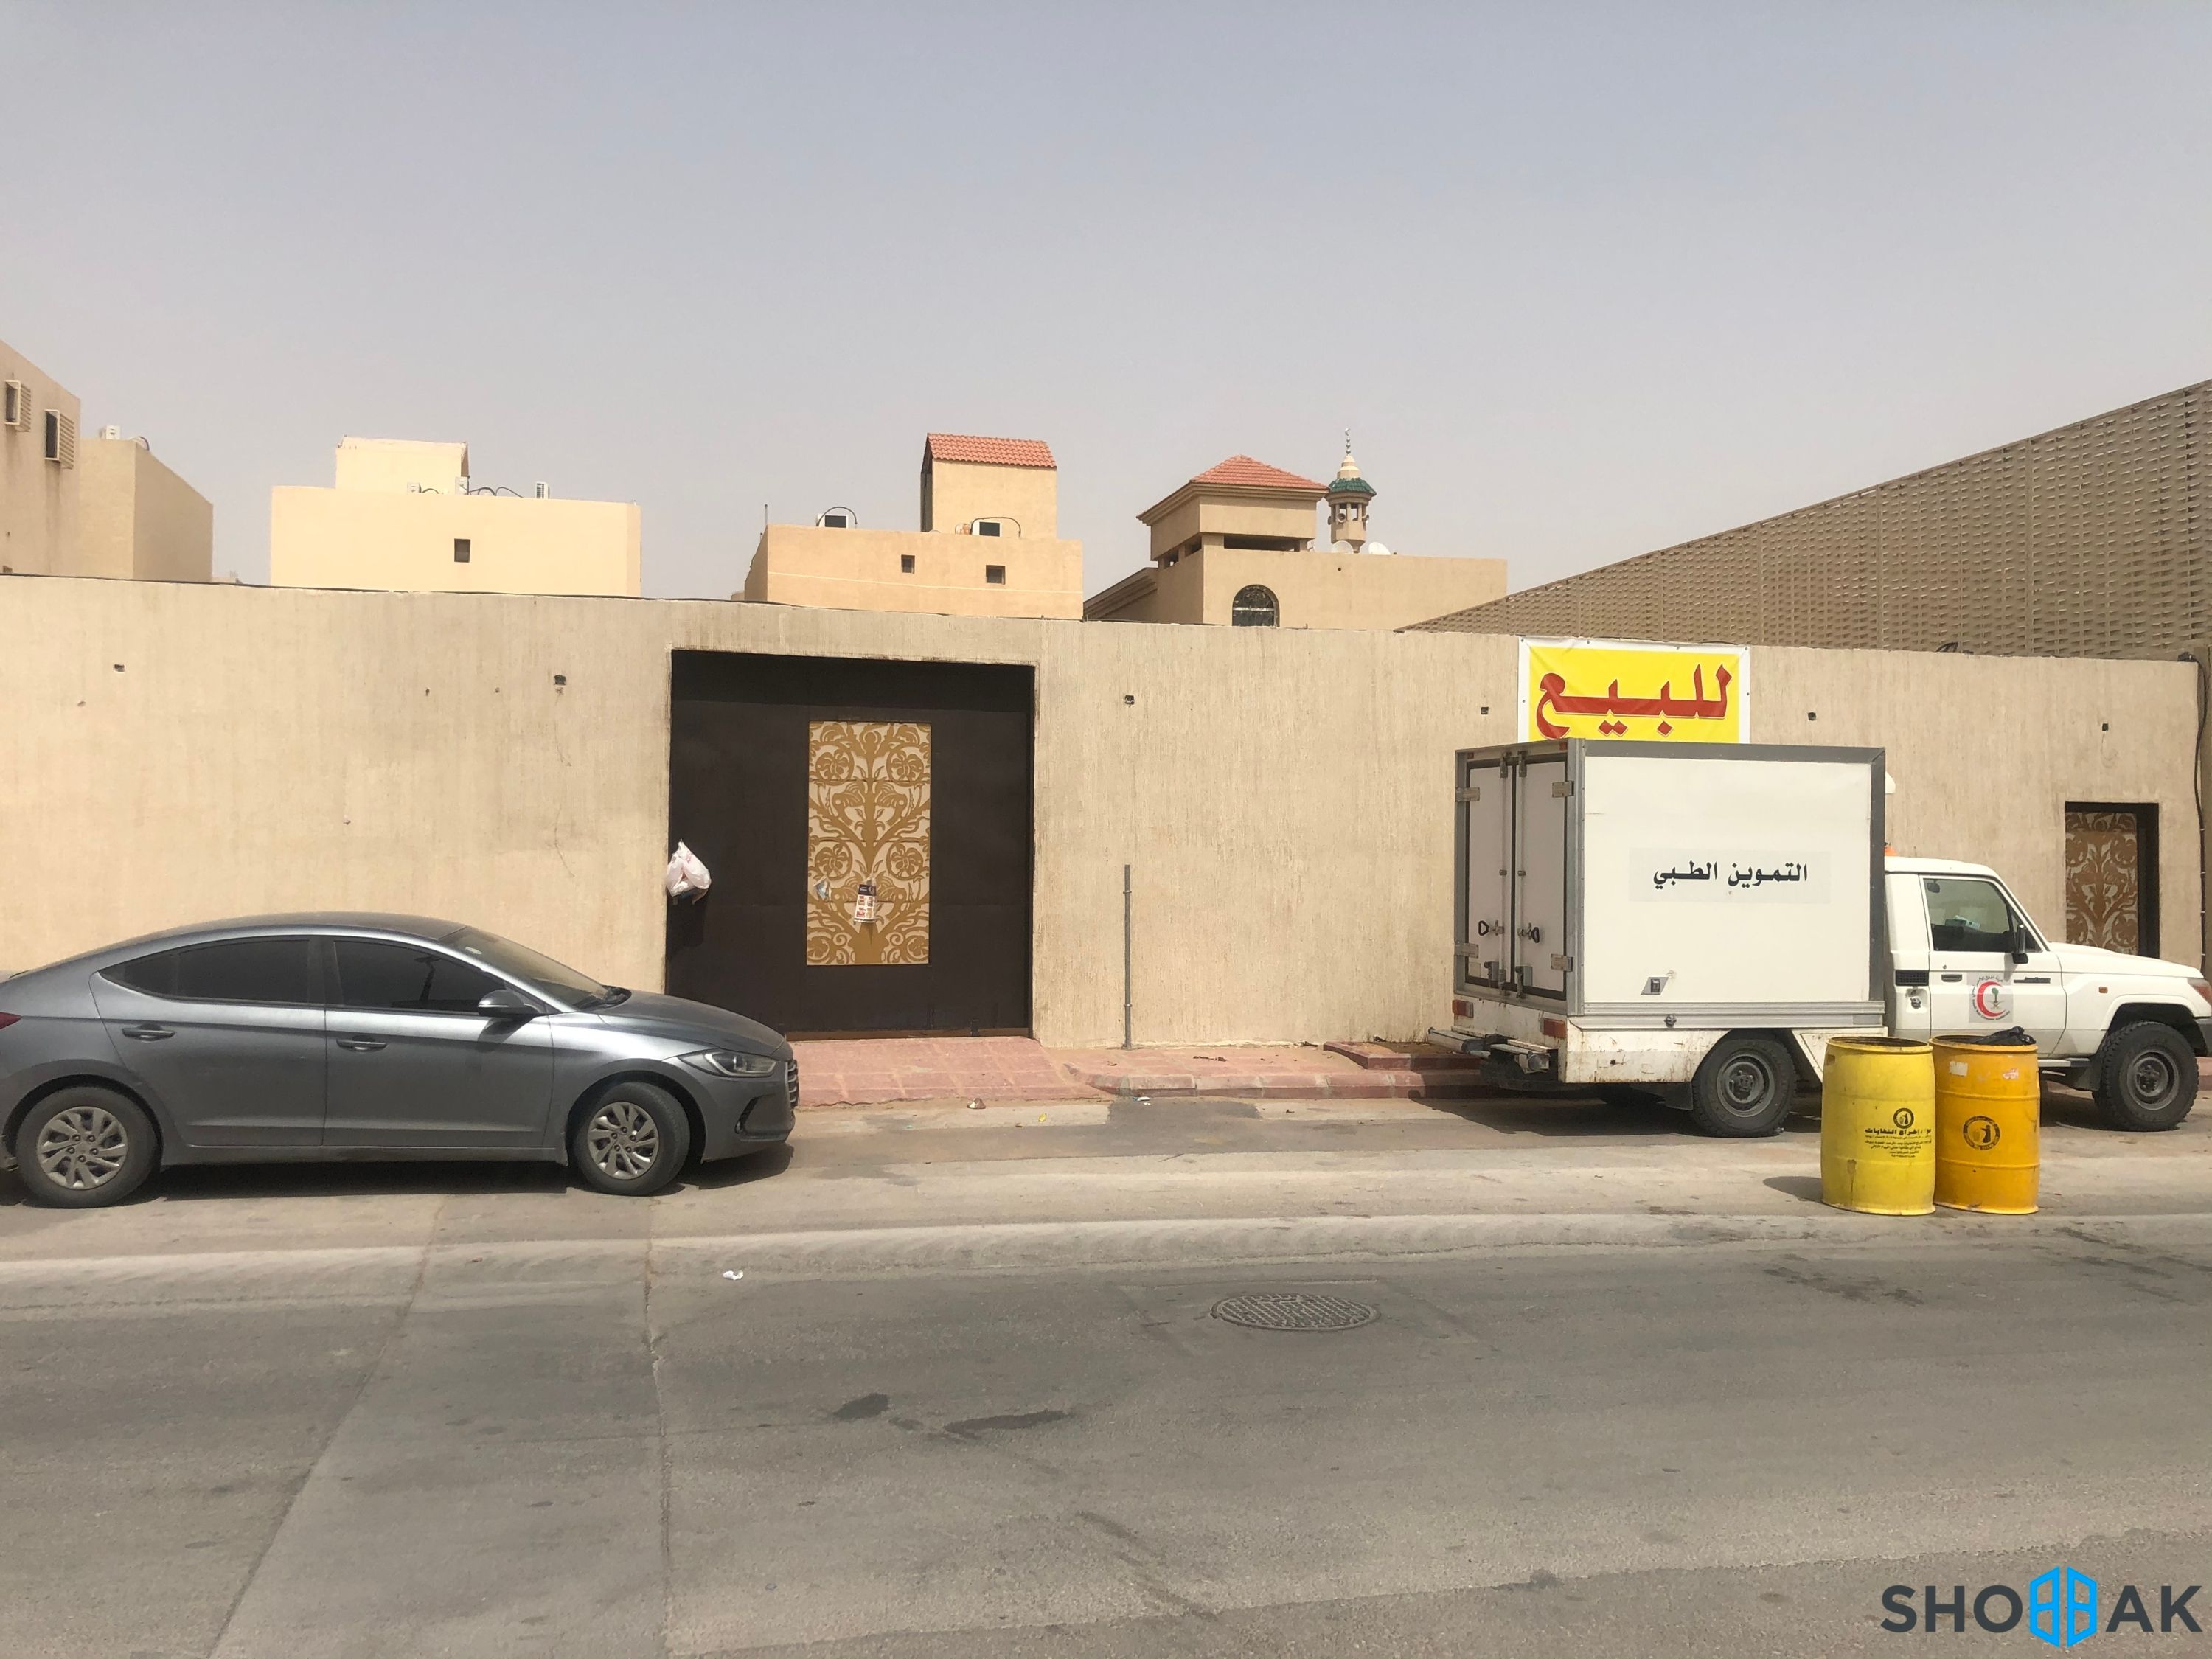 الرياض - حي الفيحاء - شارع نوح بن هبيرة  شباك السعودية